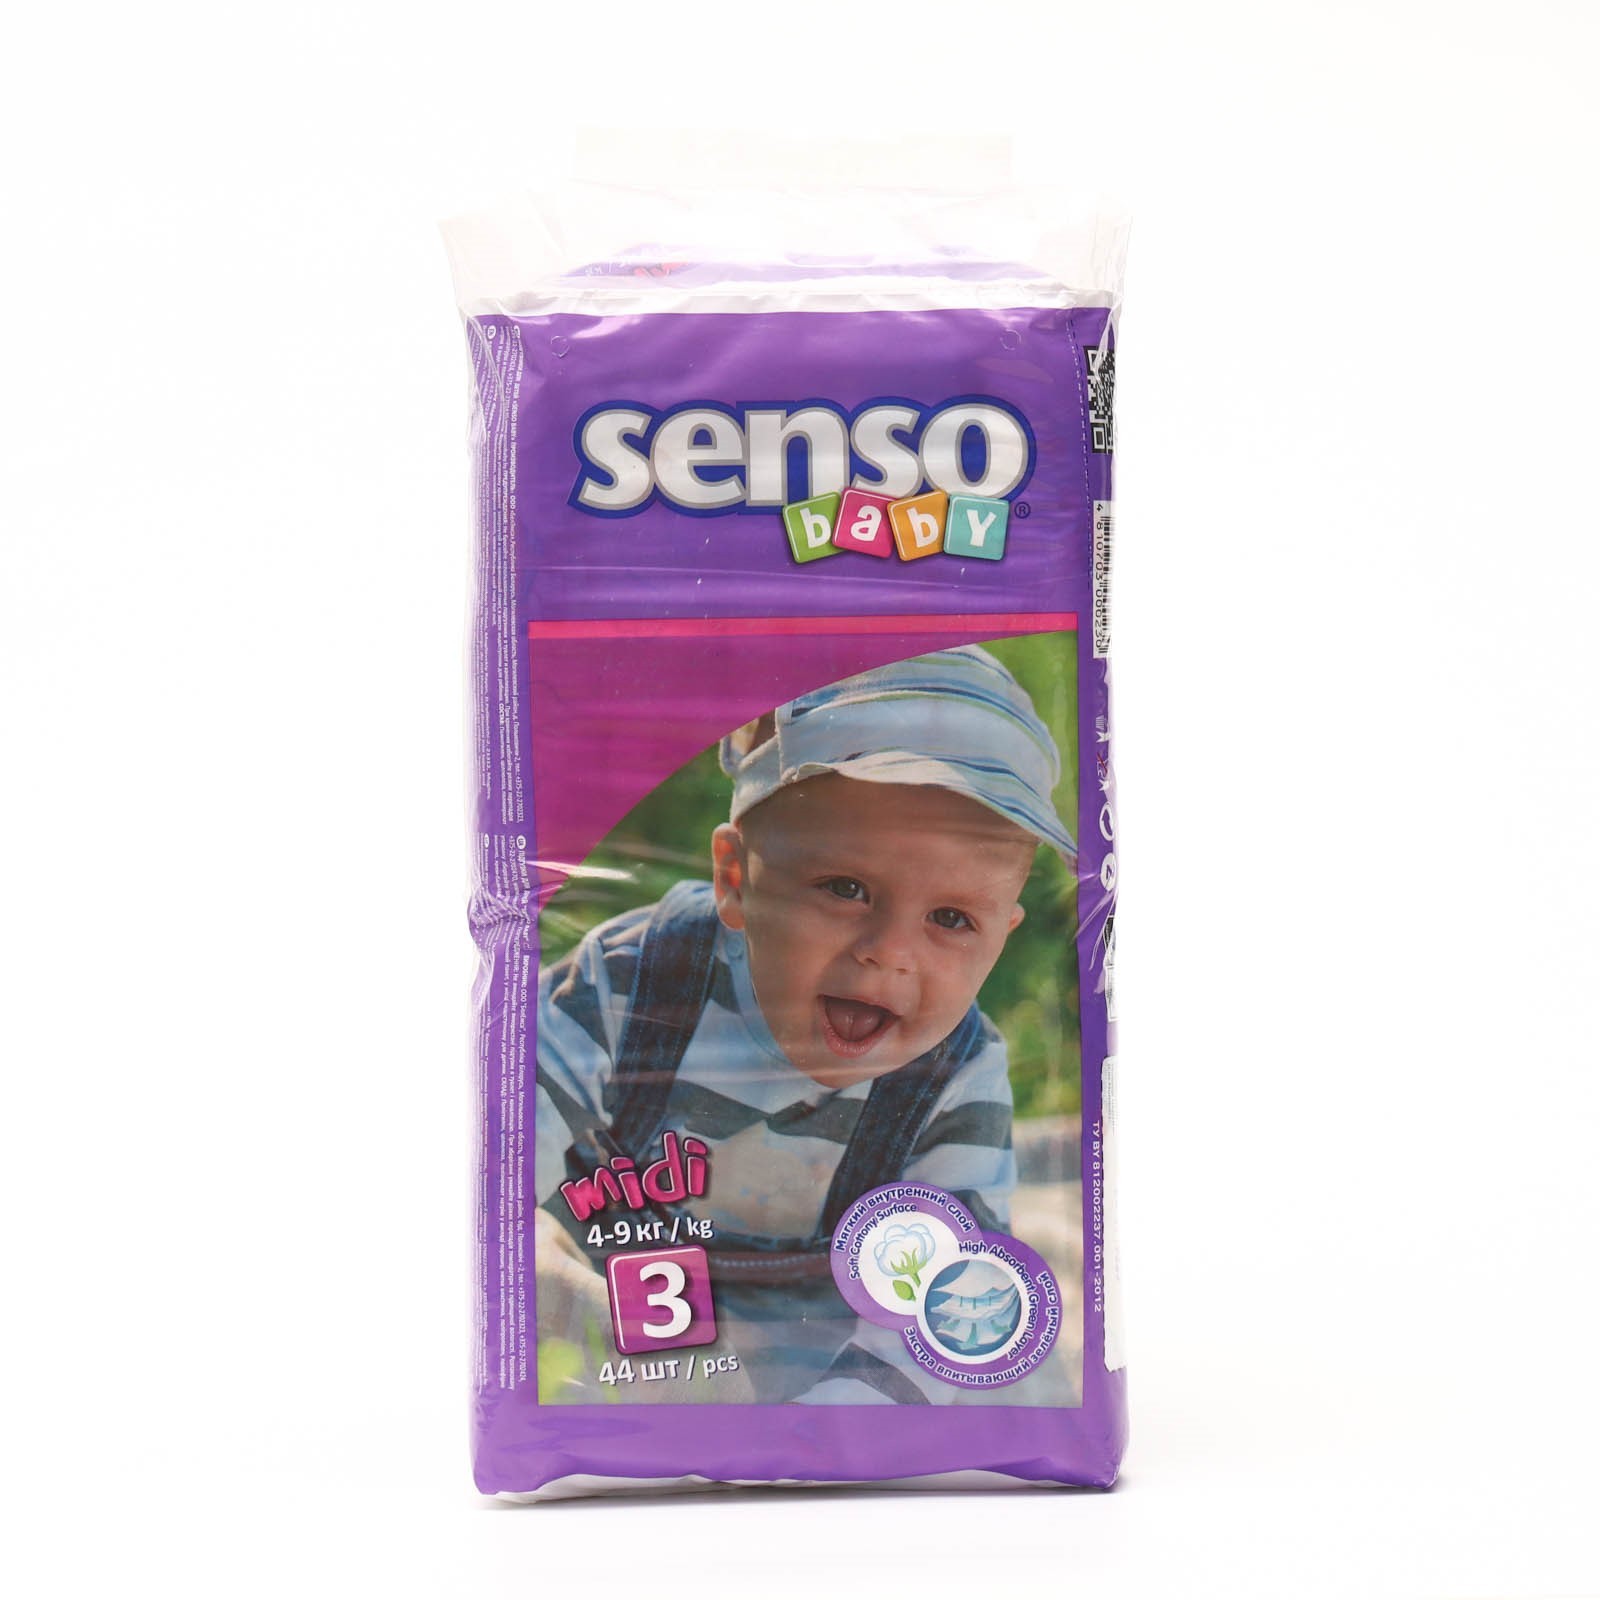 Подгузники Senso baby Midi (4-9 кг), 44 шт, 3/M  - купить